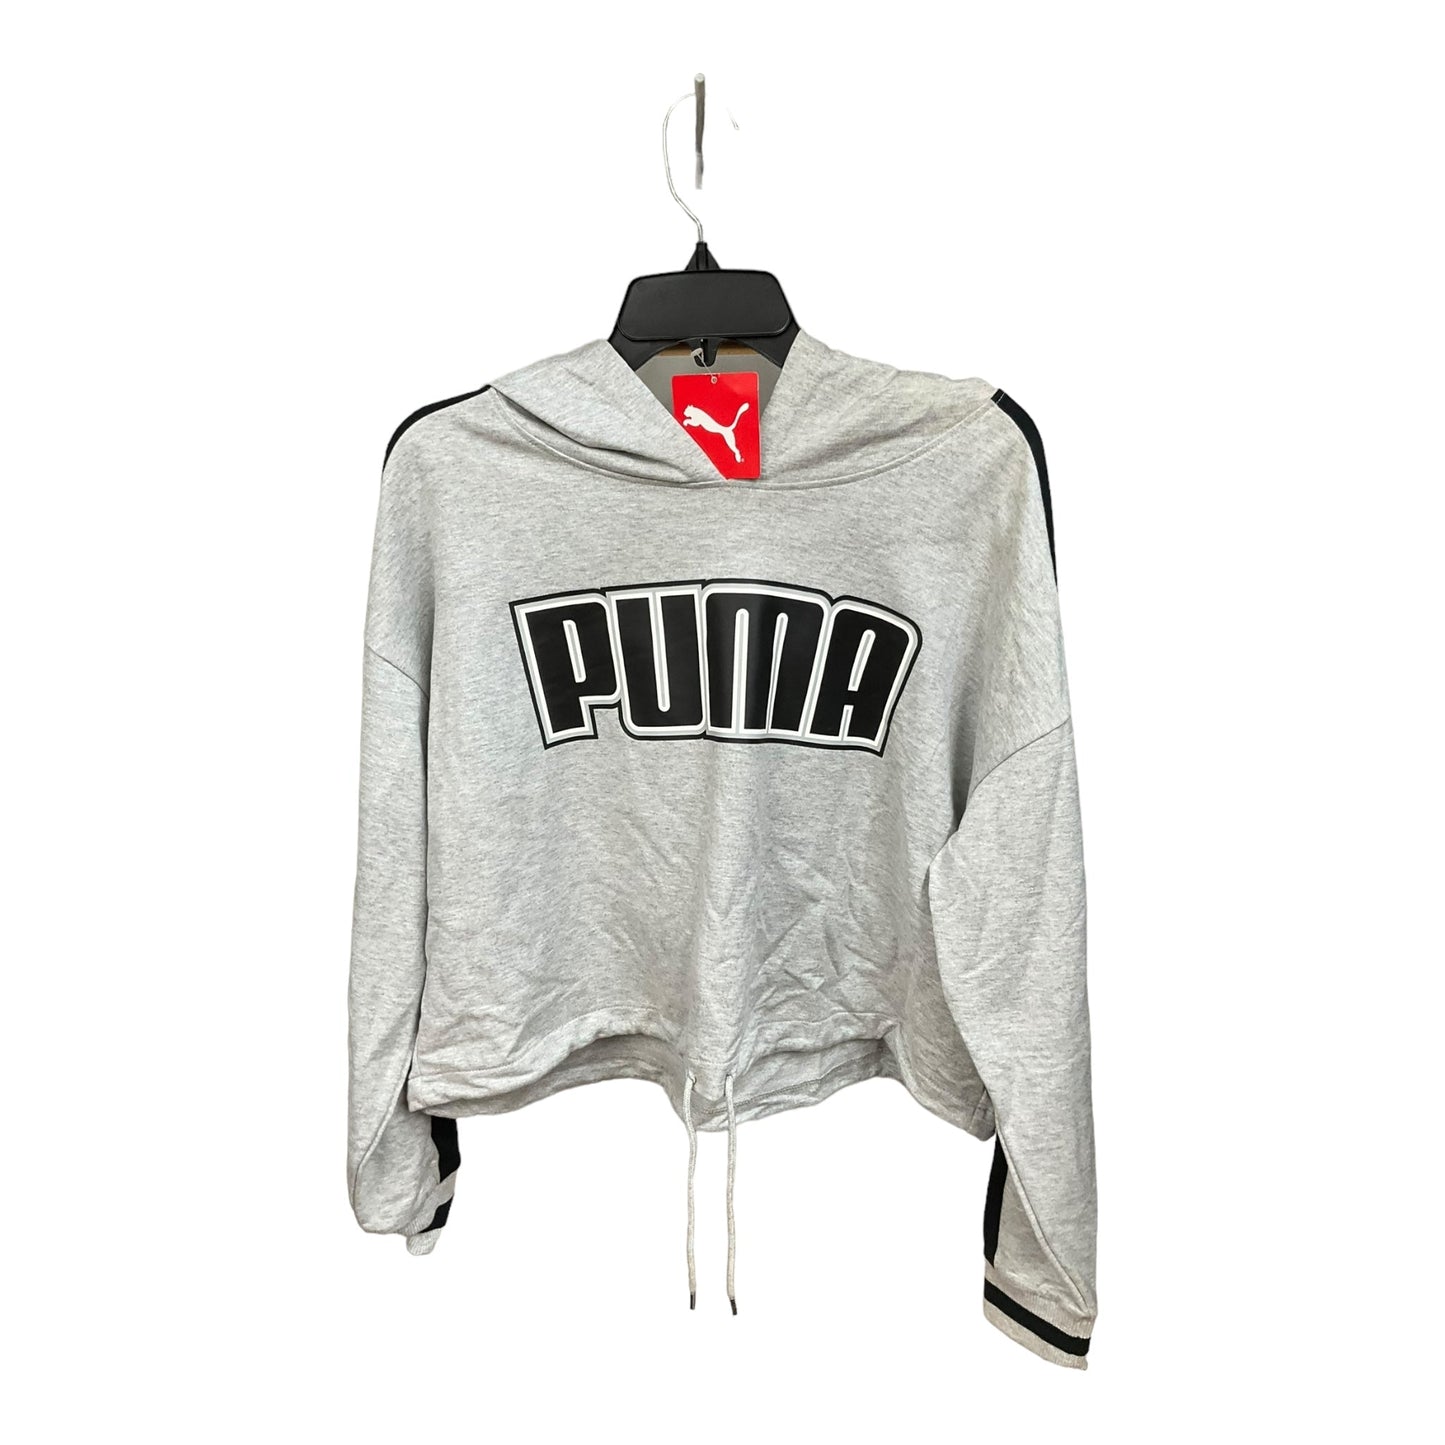 Grey Athletic Sweatshirt Hoodie Puma, Size Xl